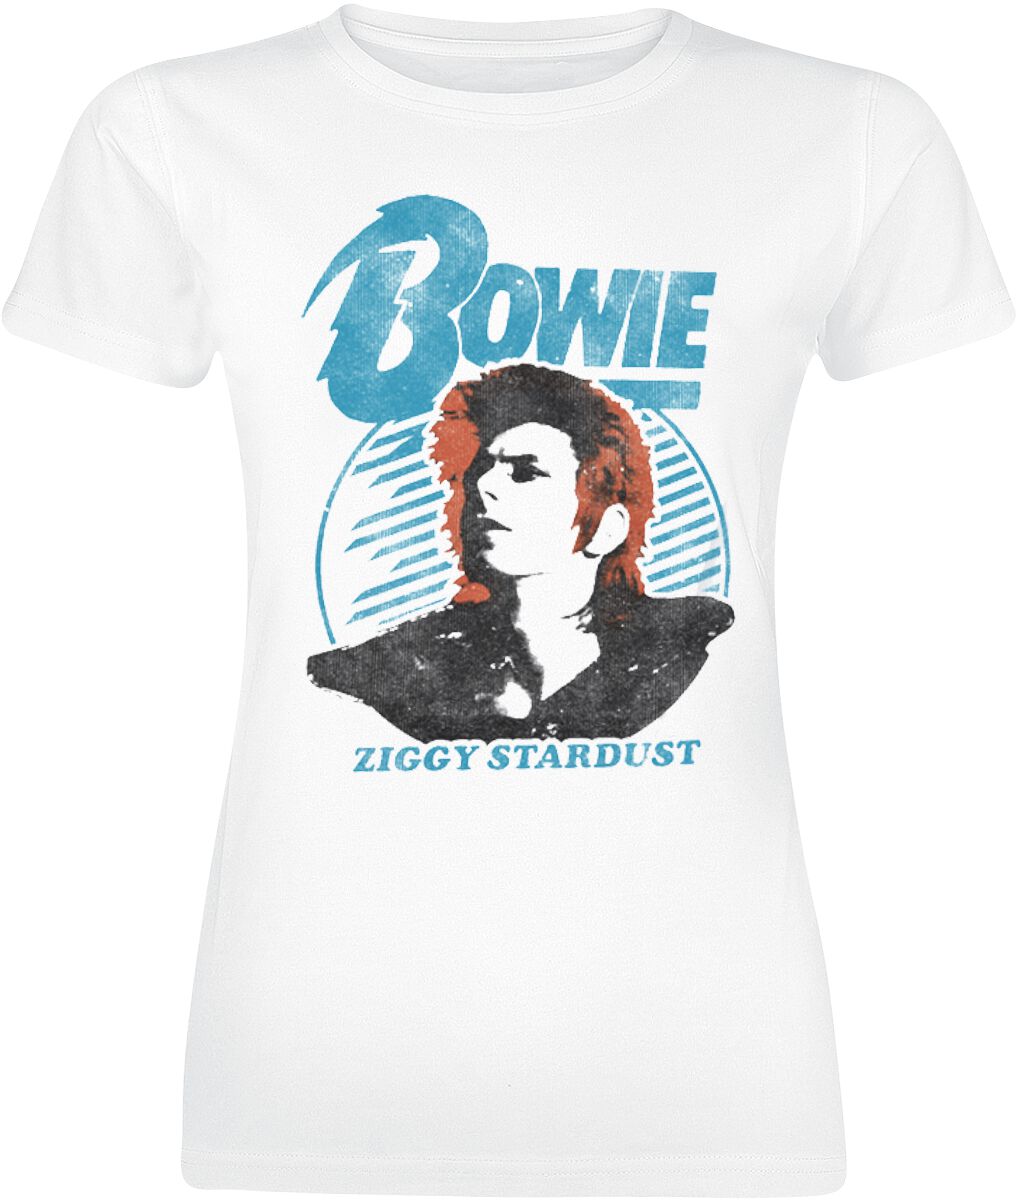 David Bowie Ziggy Stardust Orange Hair T-Shirt white